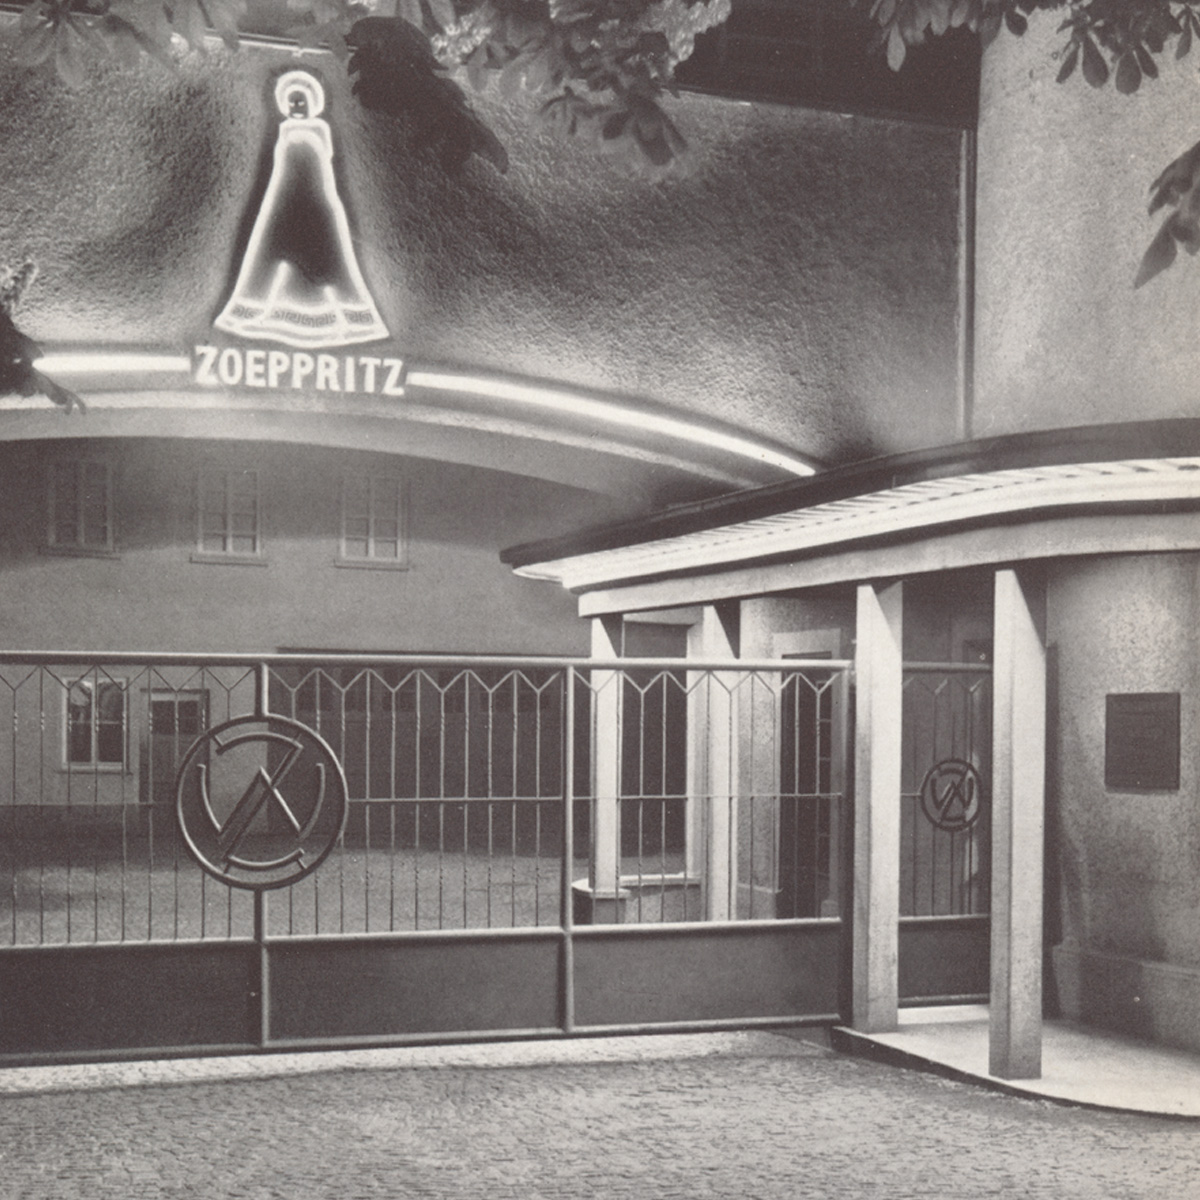 nächtliche Szene des bleuchteten Eingangsbereichs des zoeppritz Werkes um 1953